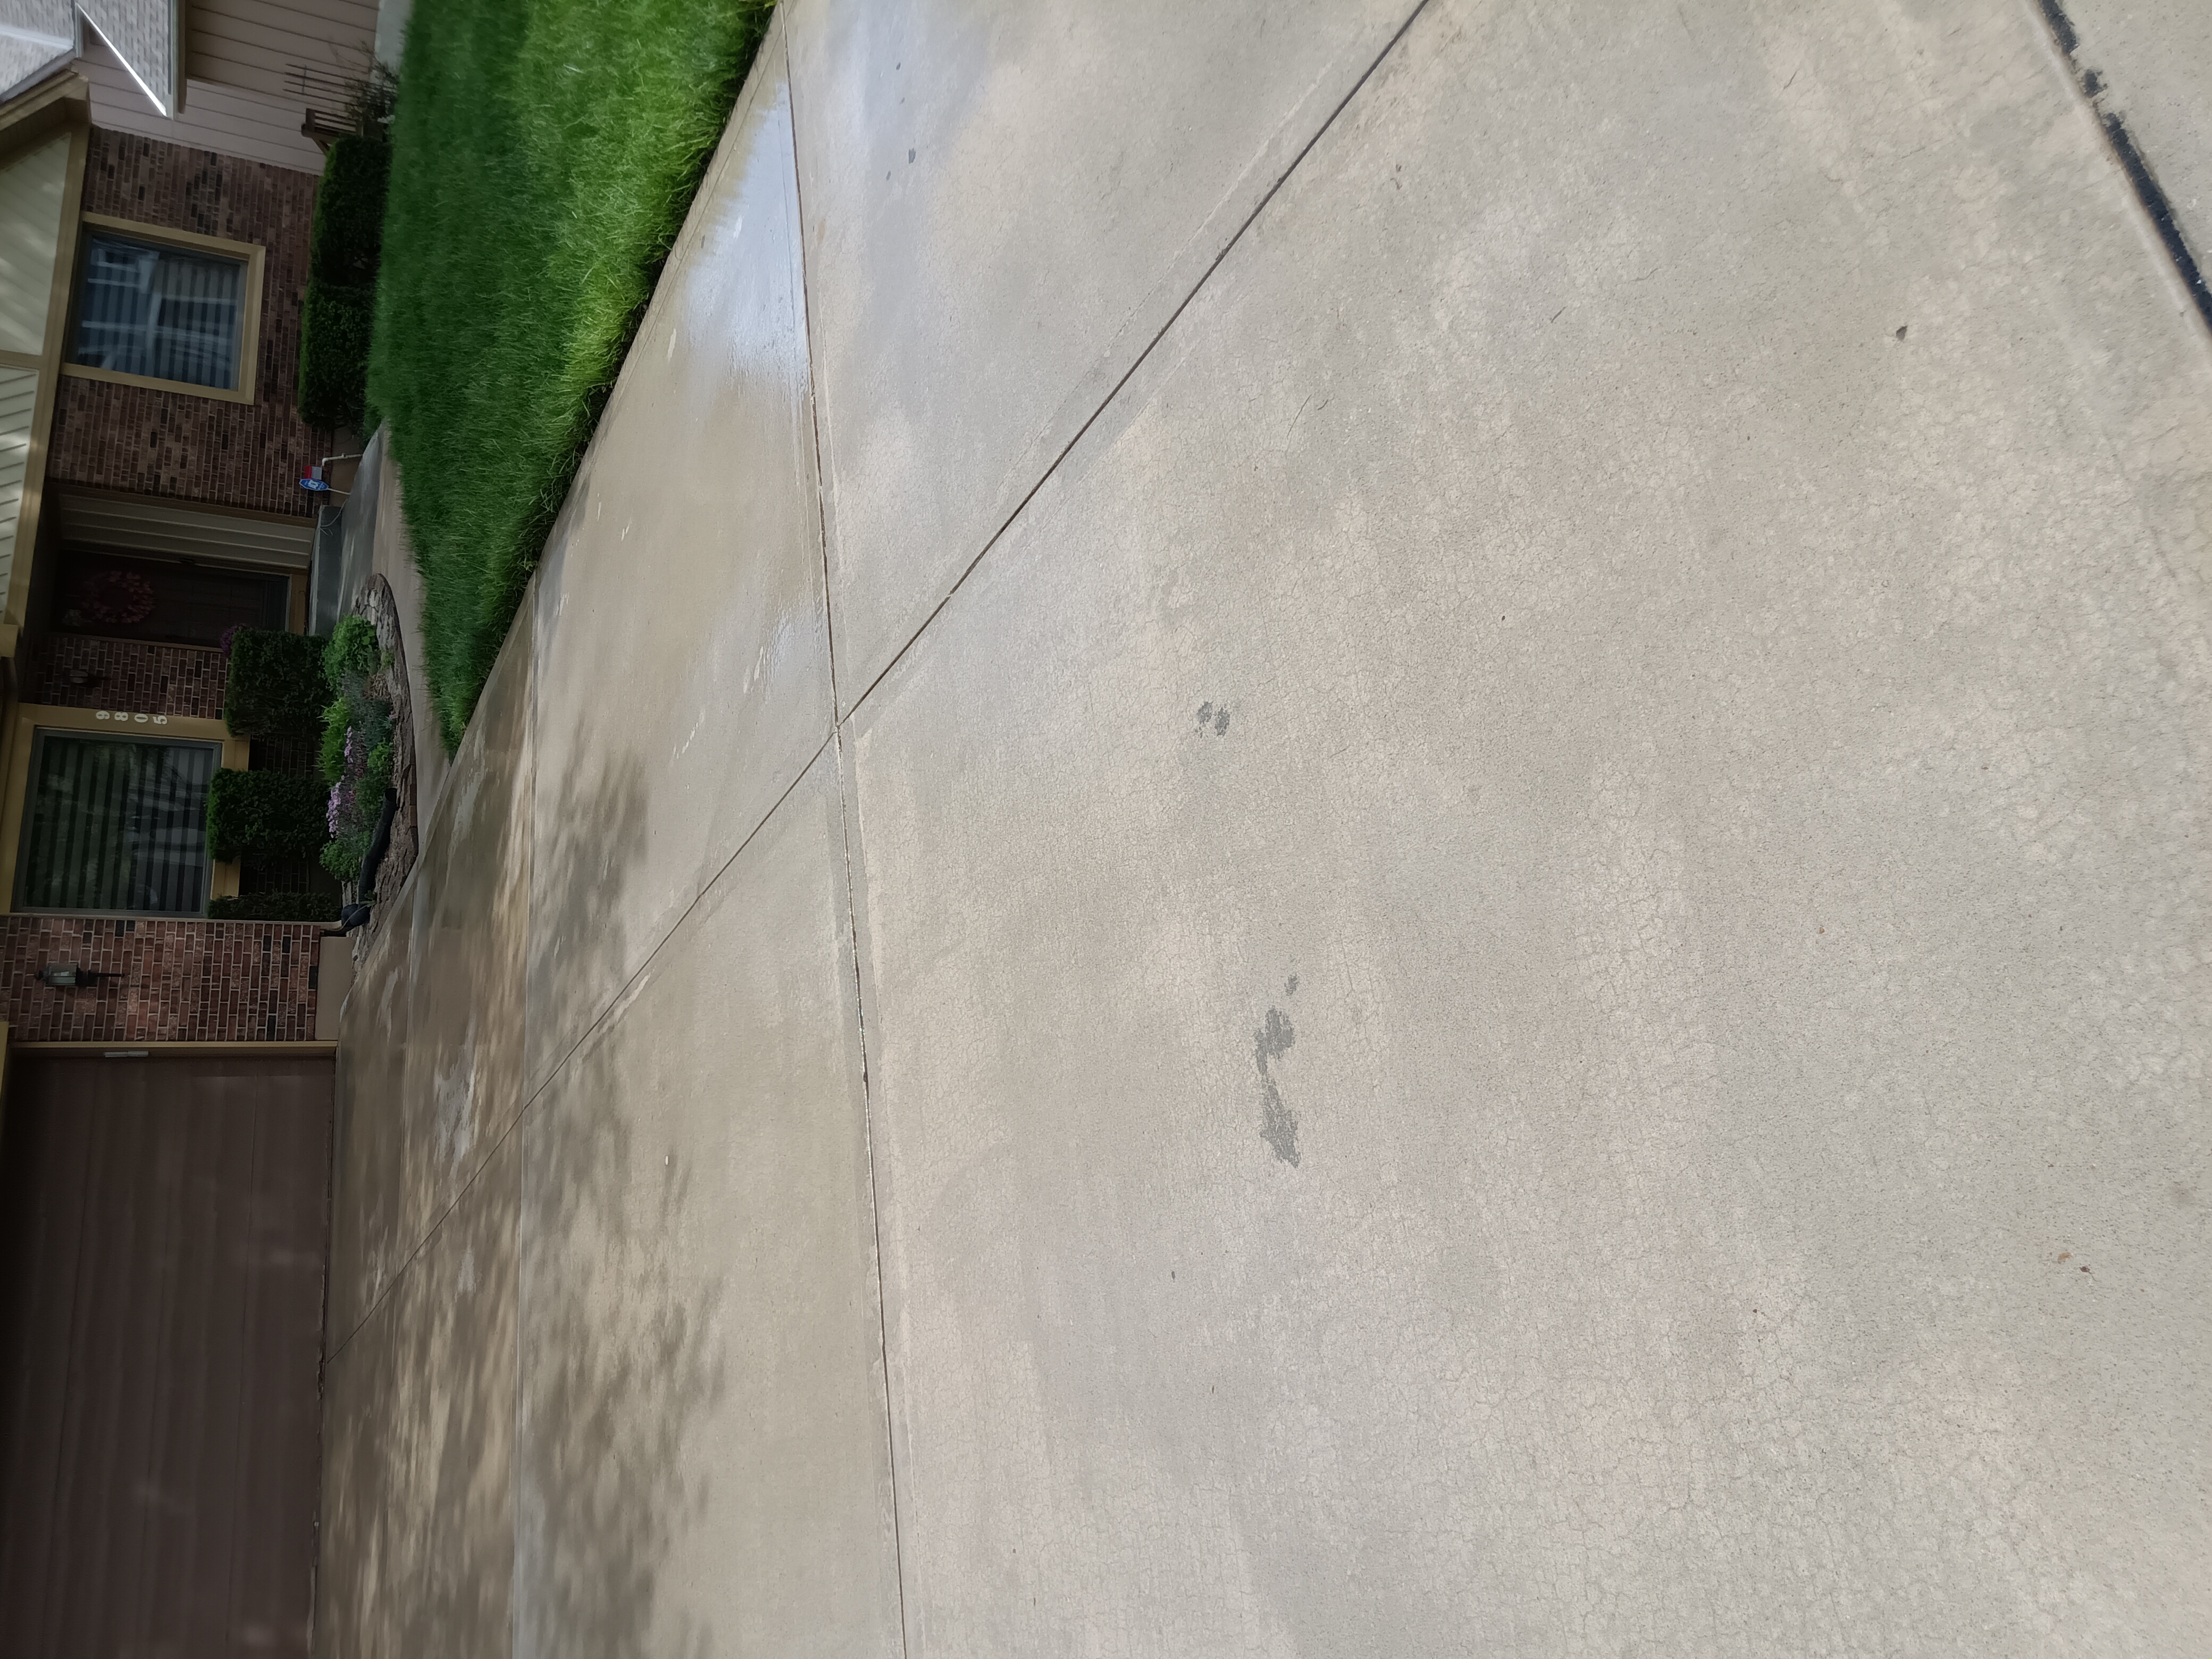 Driveway washing, Sidewalk cleaning, 9805 Kansas City, MO 